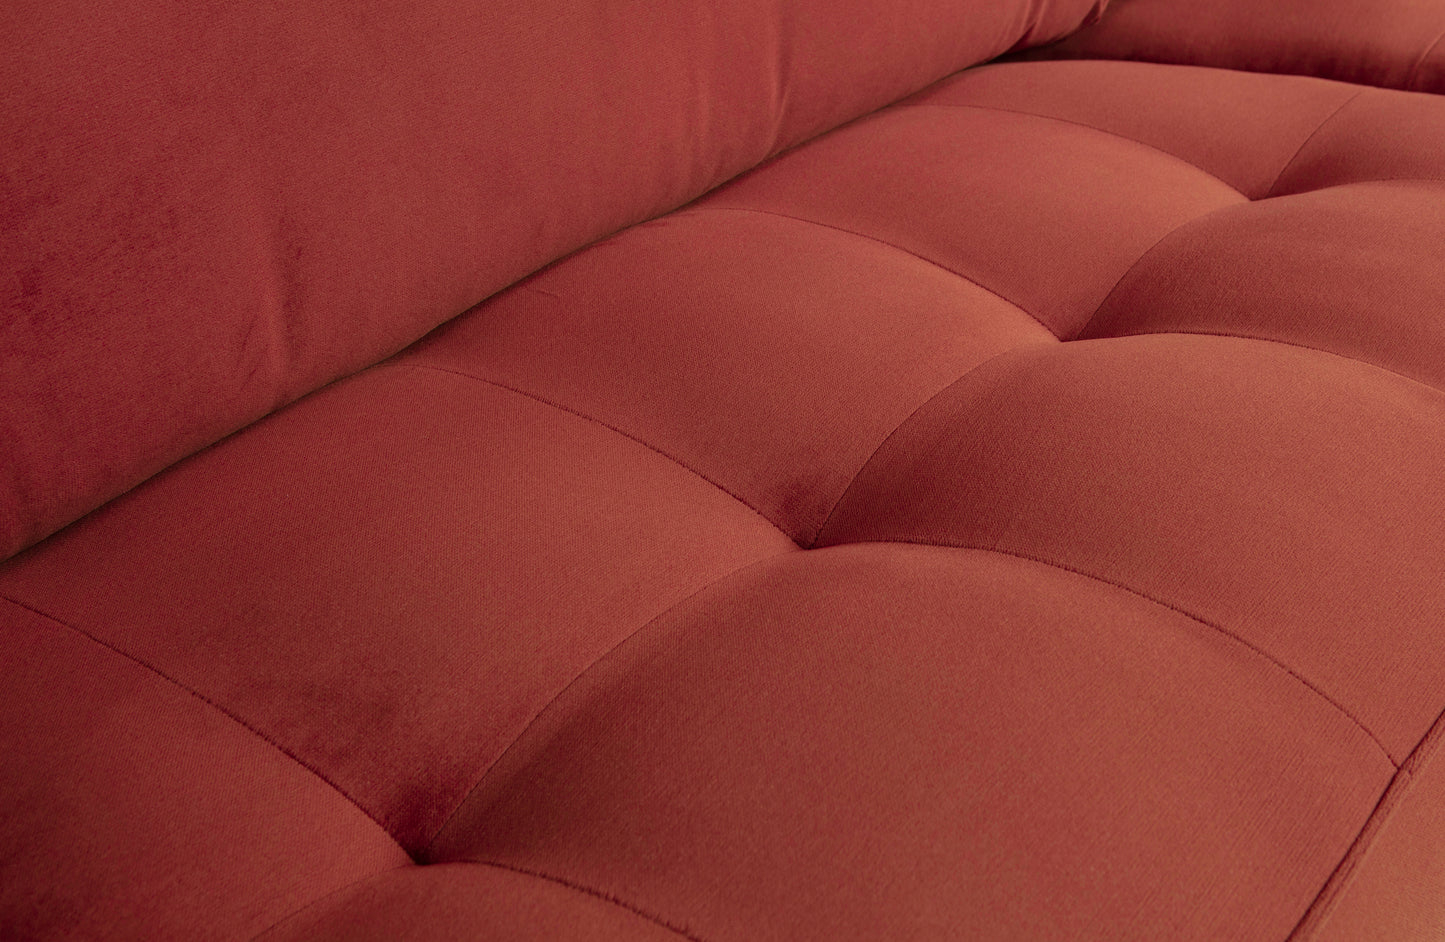 Rodeo Classic Sofa - 3 personers sofa, Velour Chestnut